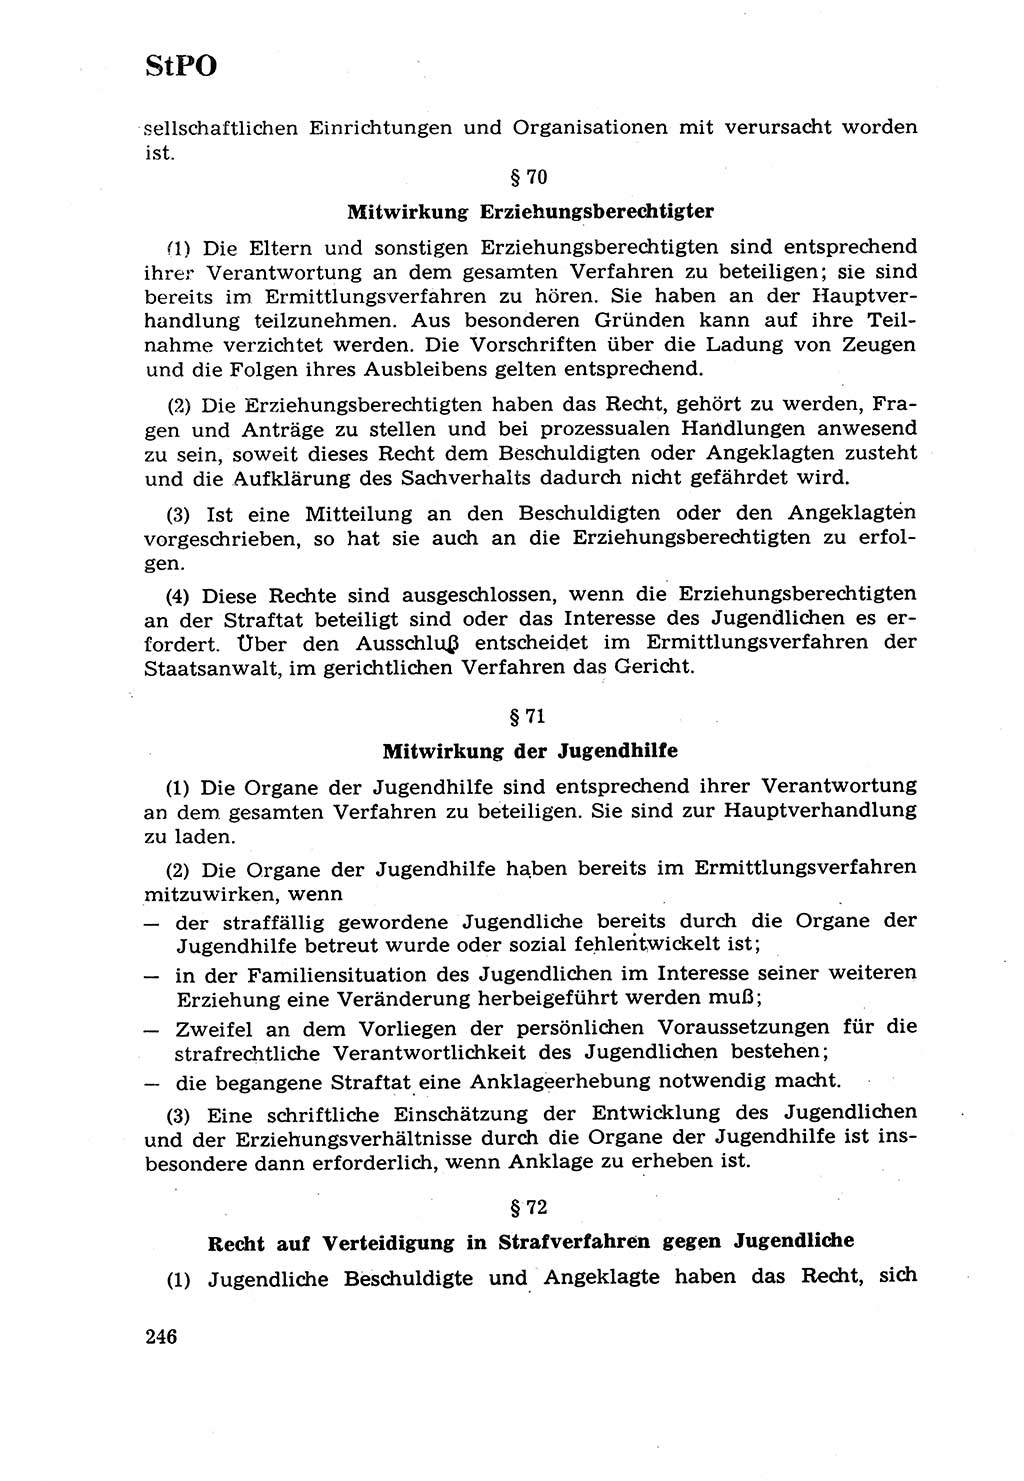 Strafrecht [Deutsche Demokratische Republik (DDR)] 1968, Seite 246 (Strafr. DDR 1968, S. 246)